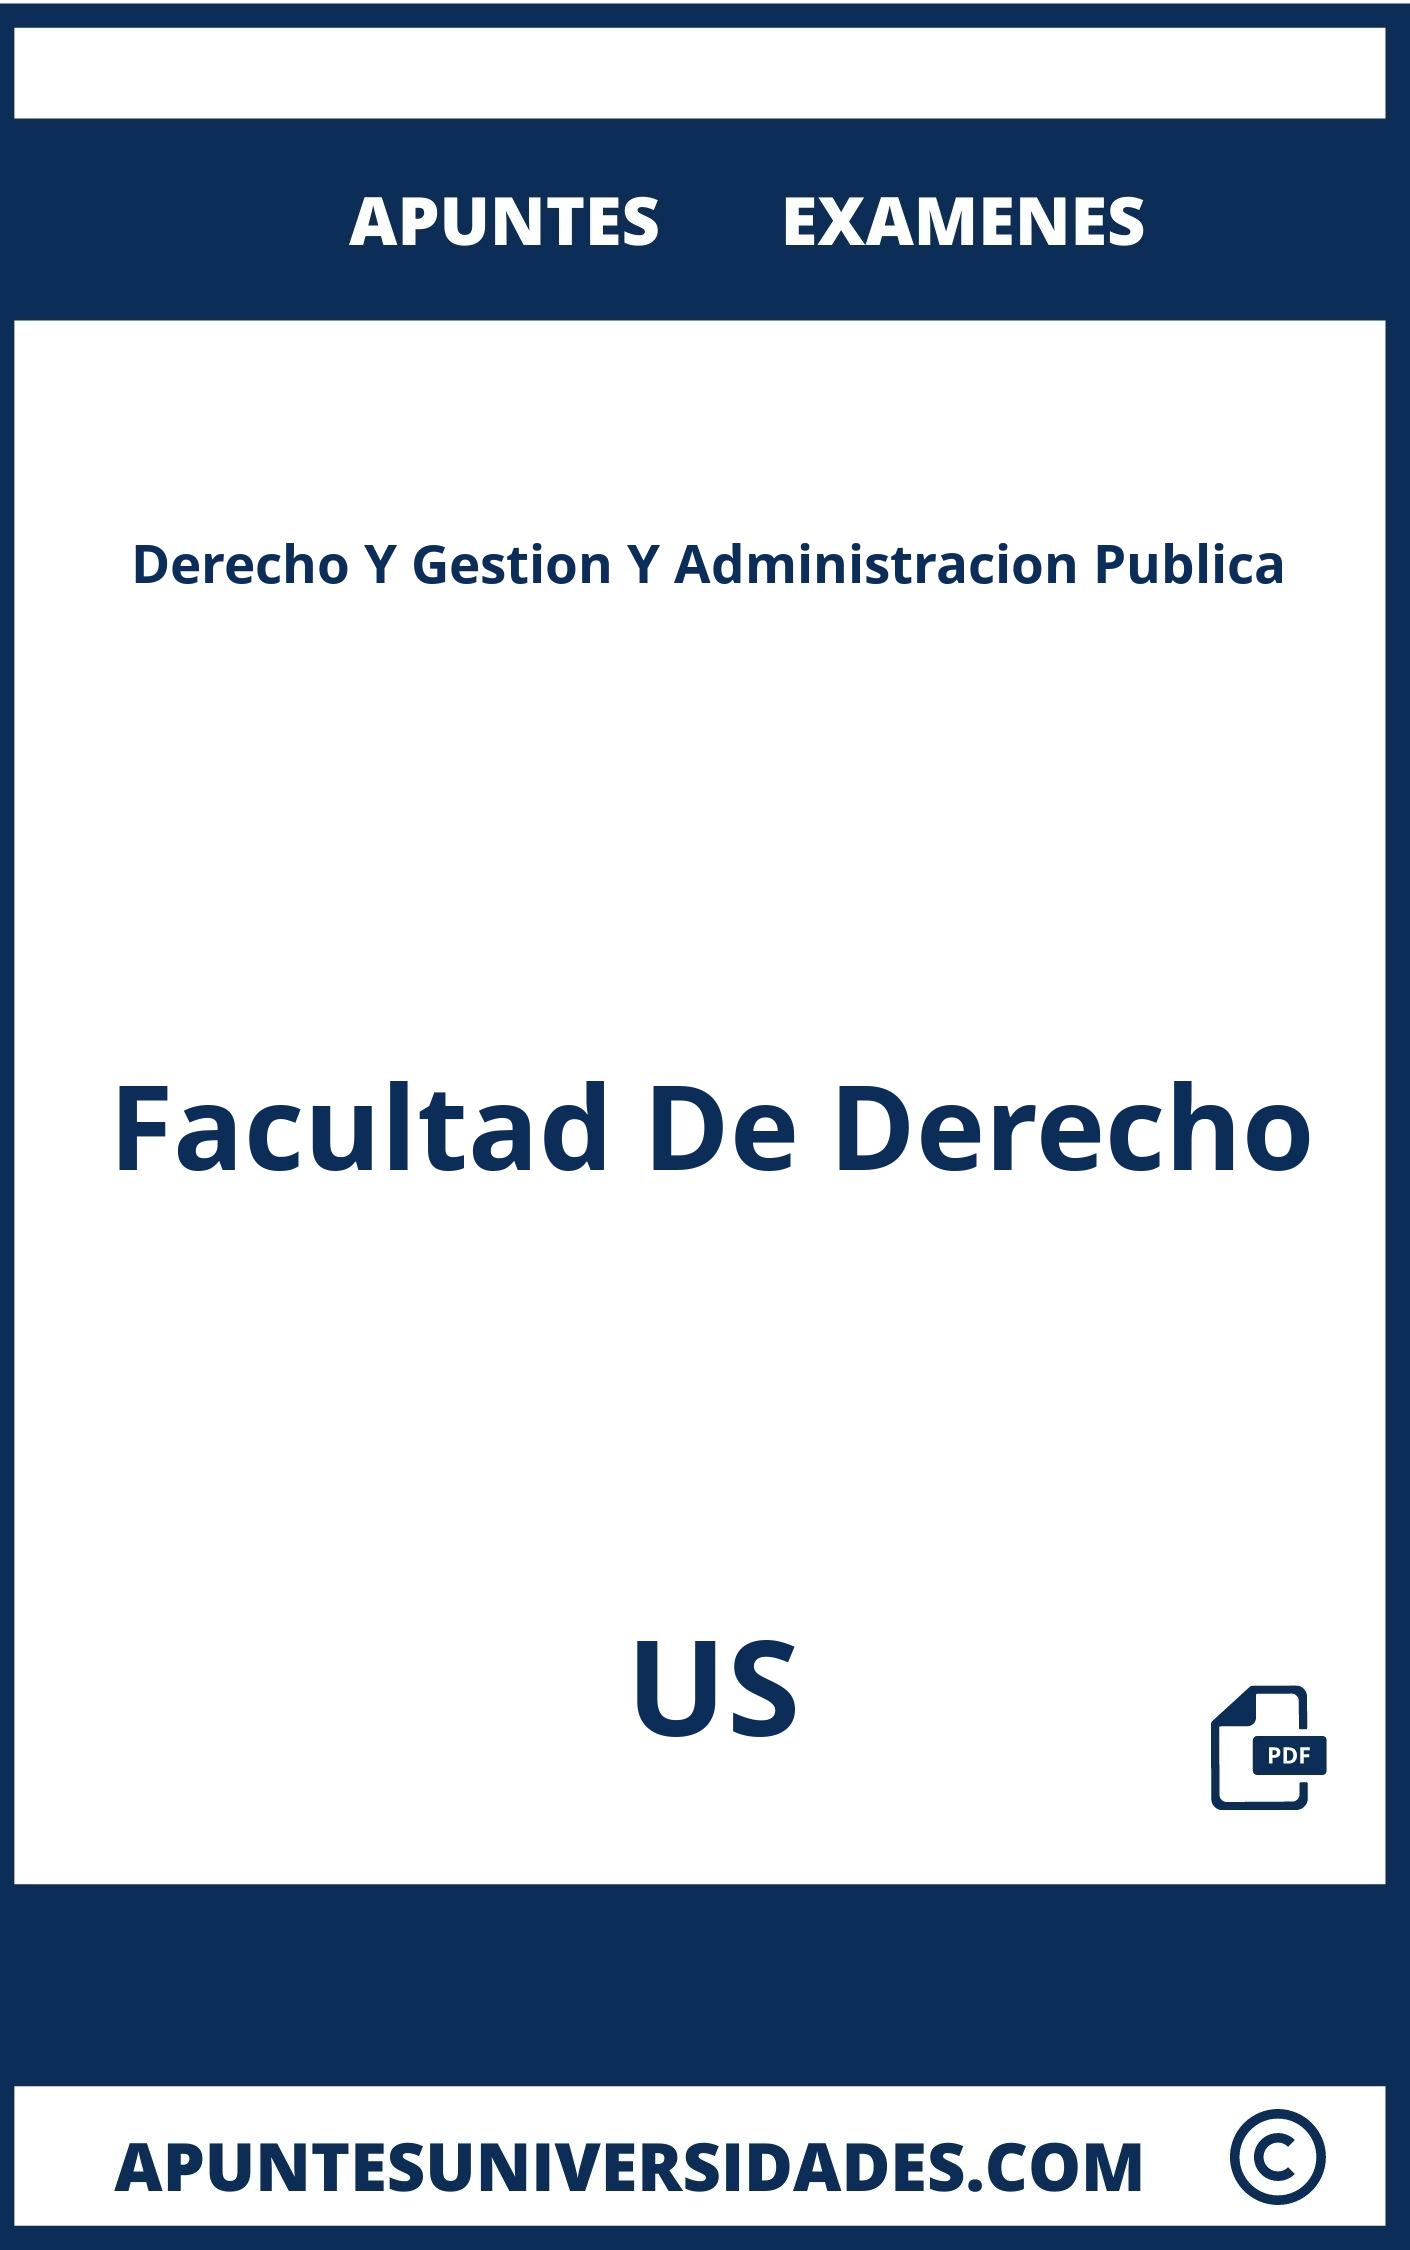 Examenes y Apuntes de Derecho Y Gestion Y Administracion Publica US